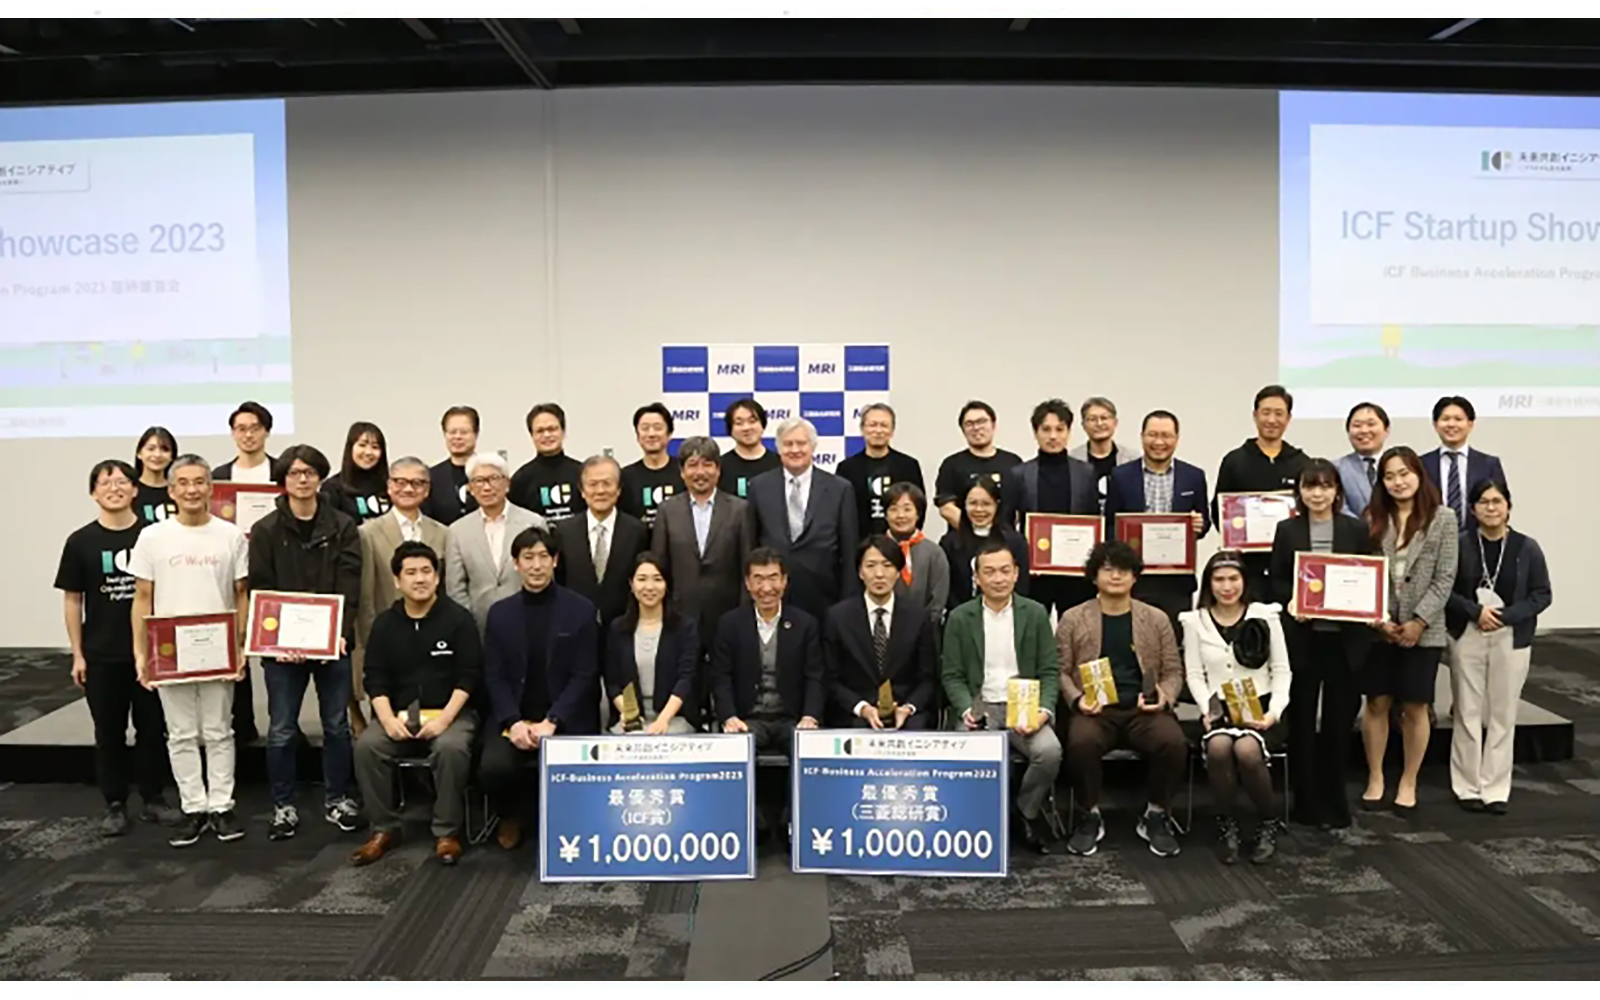 三菱総研主催ICF Business Acceleration Program2023で優秀賞を受賞